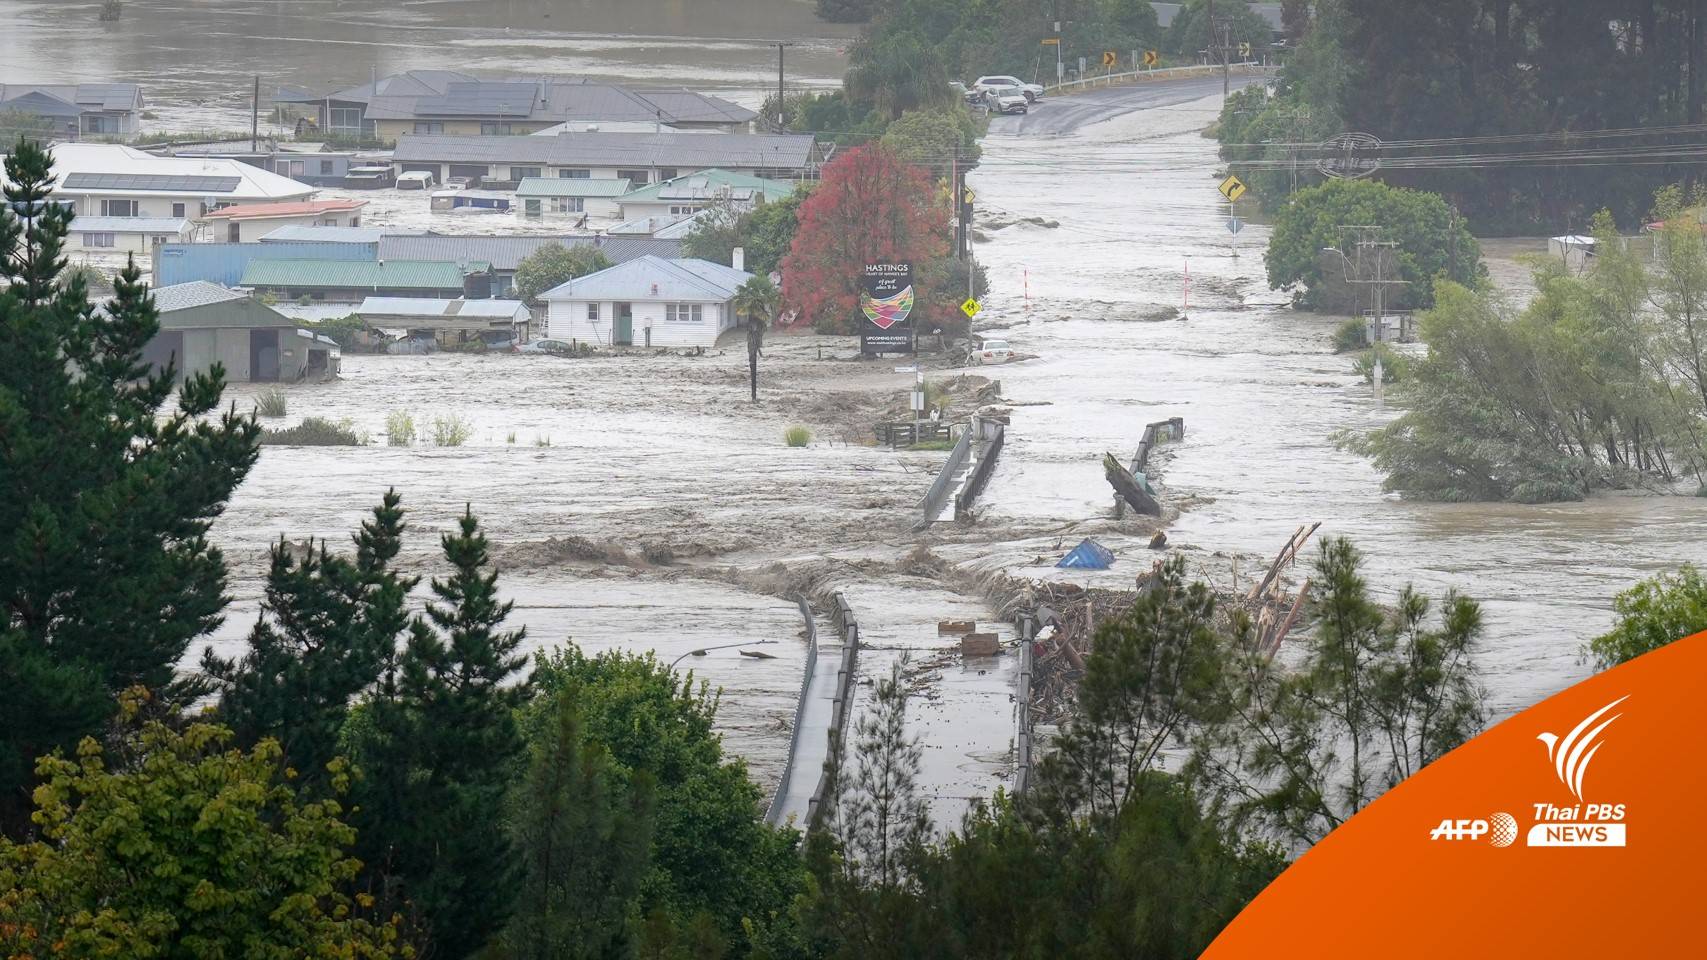 "นิวซีแลนด์" เสียหายหนักหลังพายุพัดถล่ม ประชาชน 2,500 คนไร้ที่อยู่ 